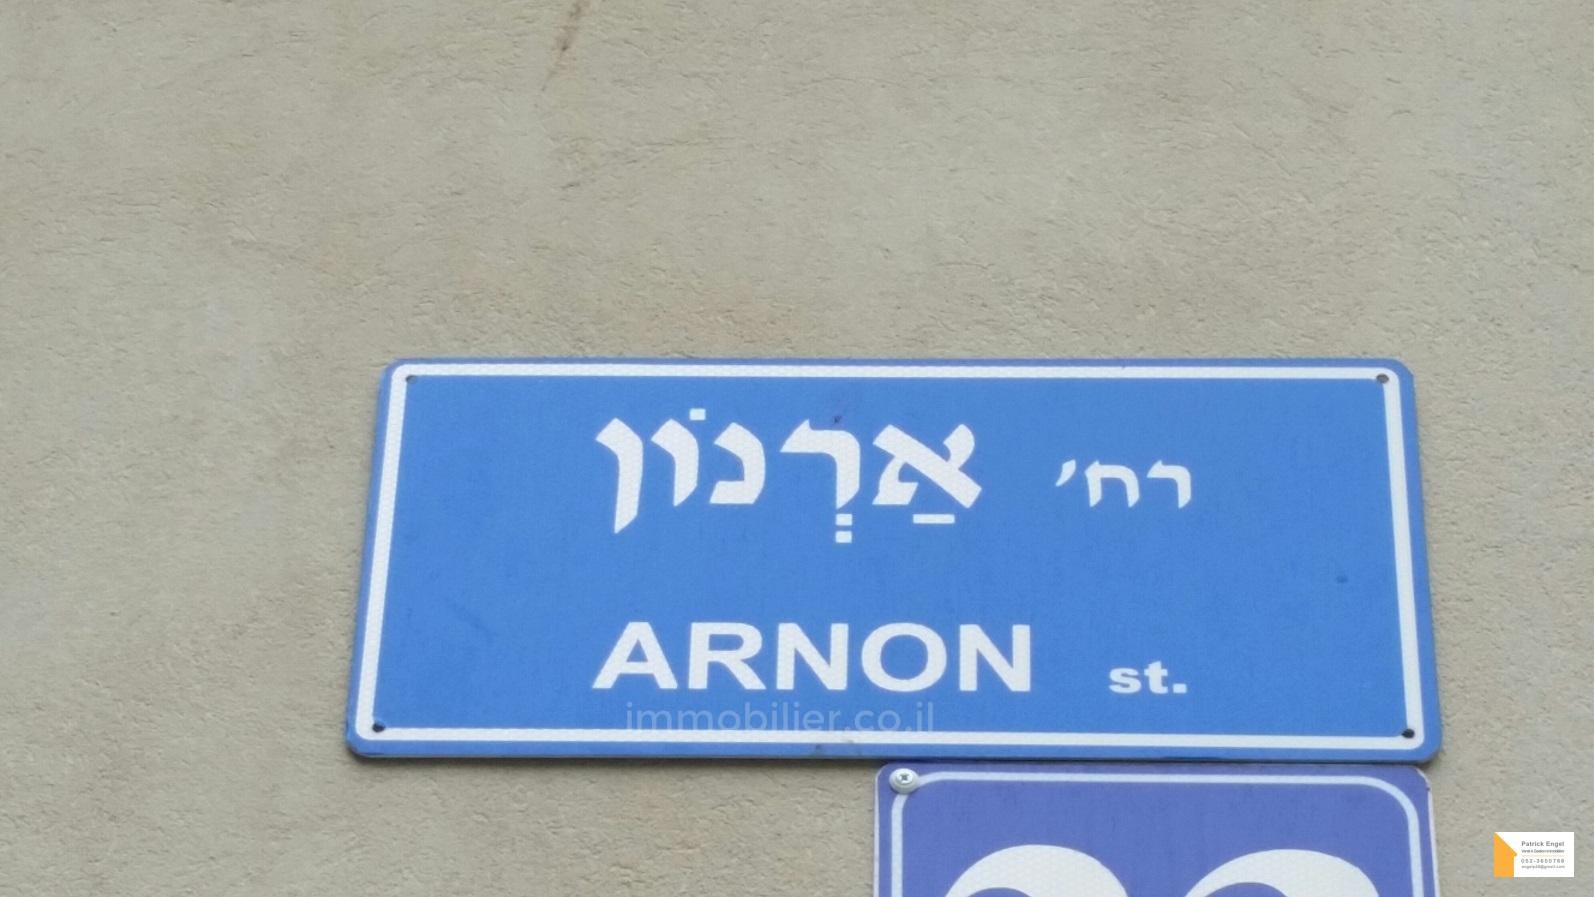 Appartamento 5 vani Tel Aviv quartiere di mare 232-IBL-3575